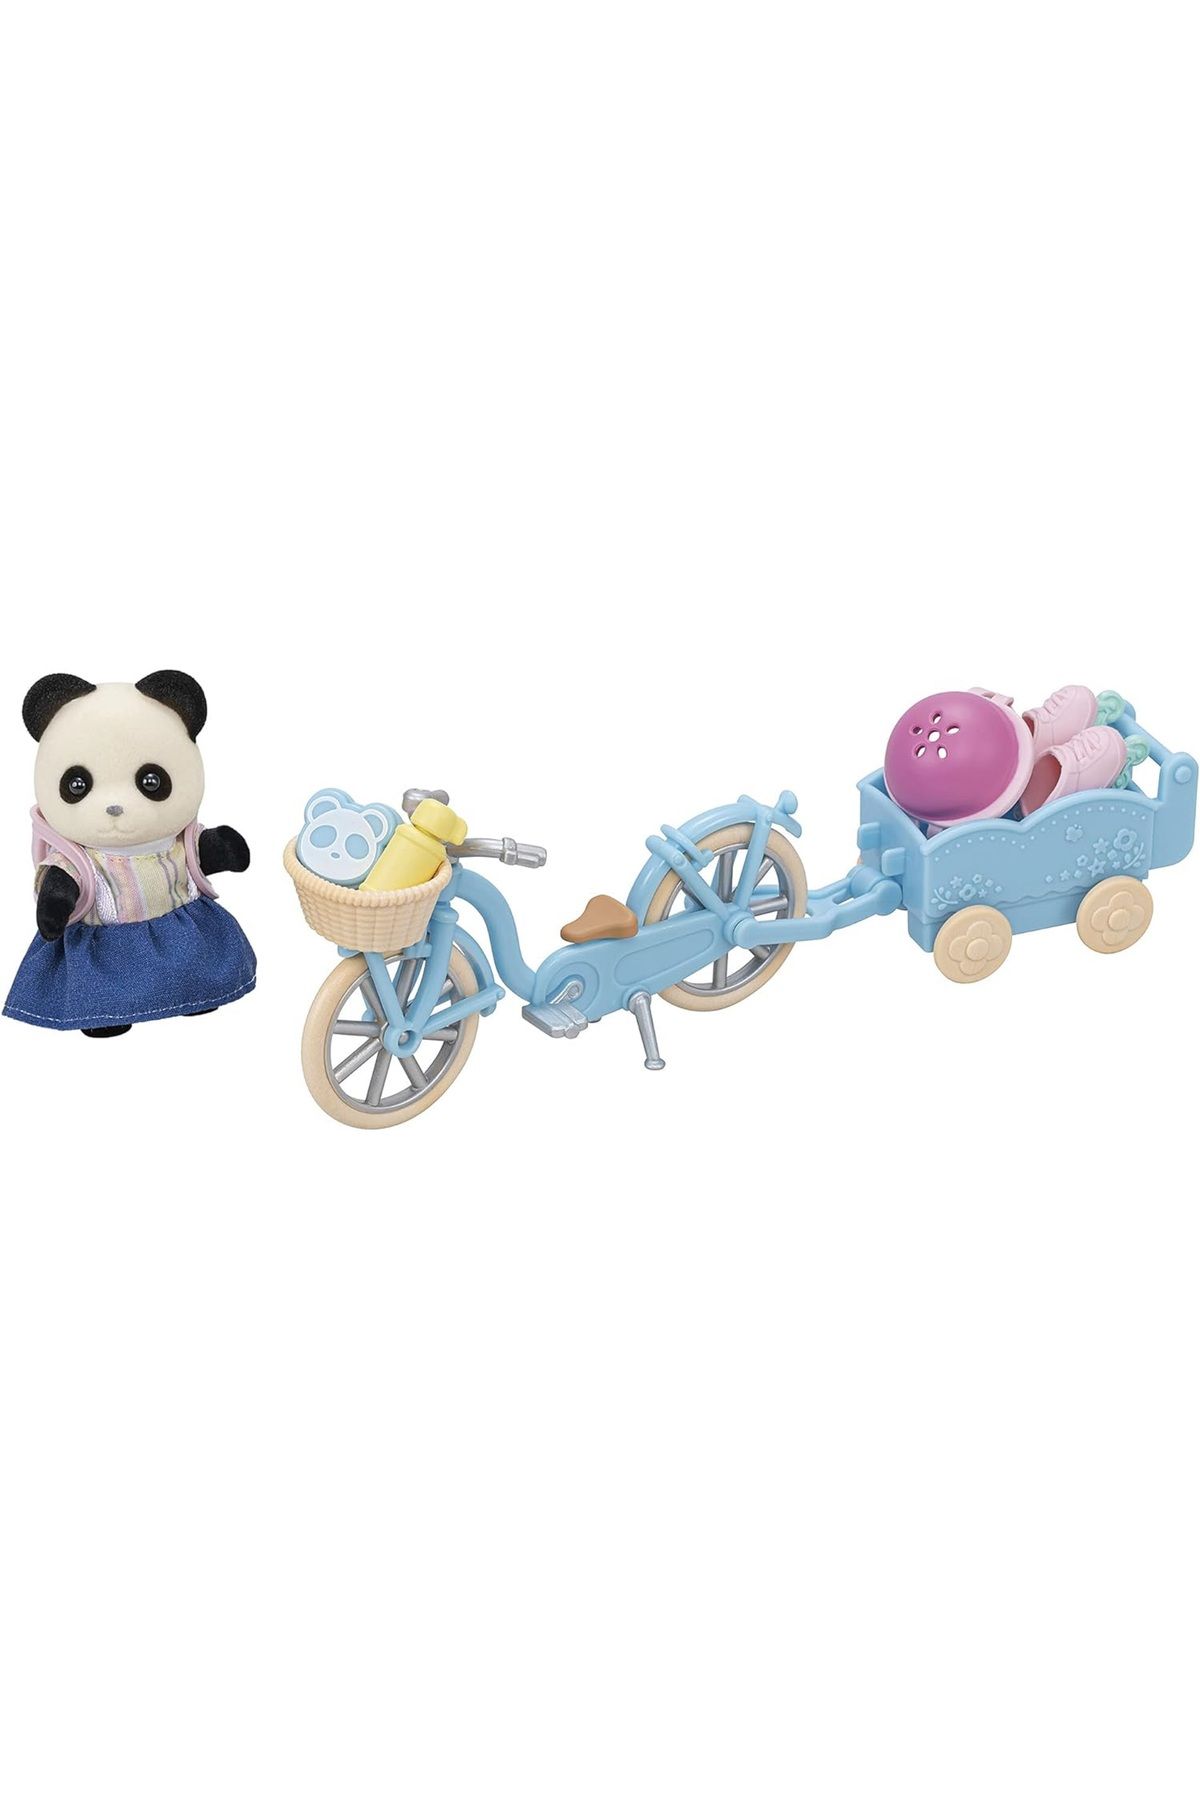 Tower Toys Sylvanian Families 5652 Bisiklet ve Paten Seti, Panda Kız